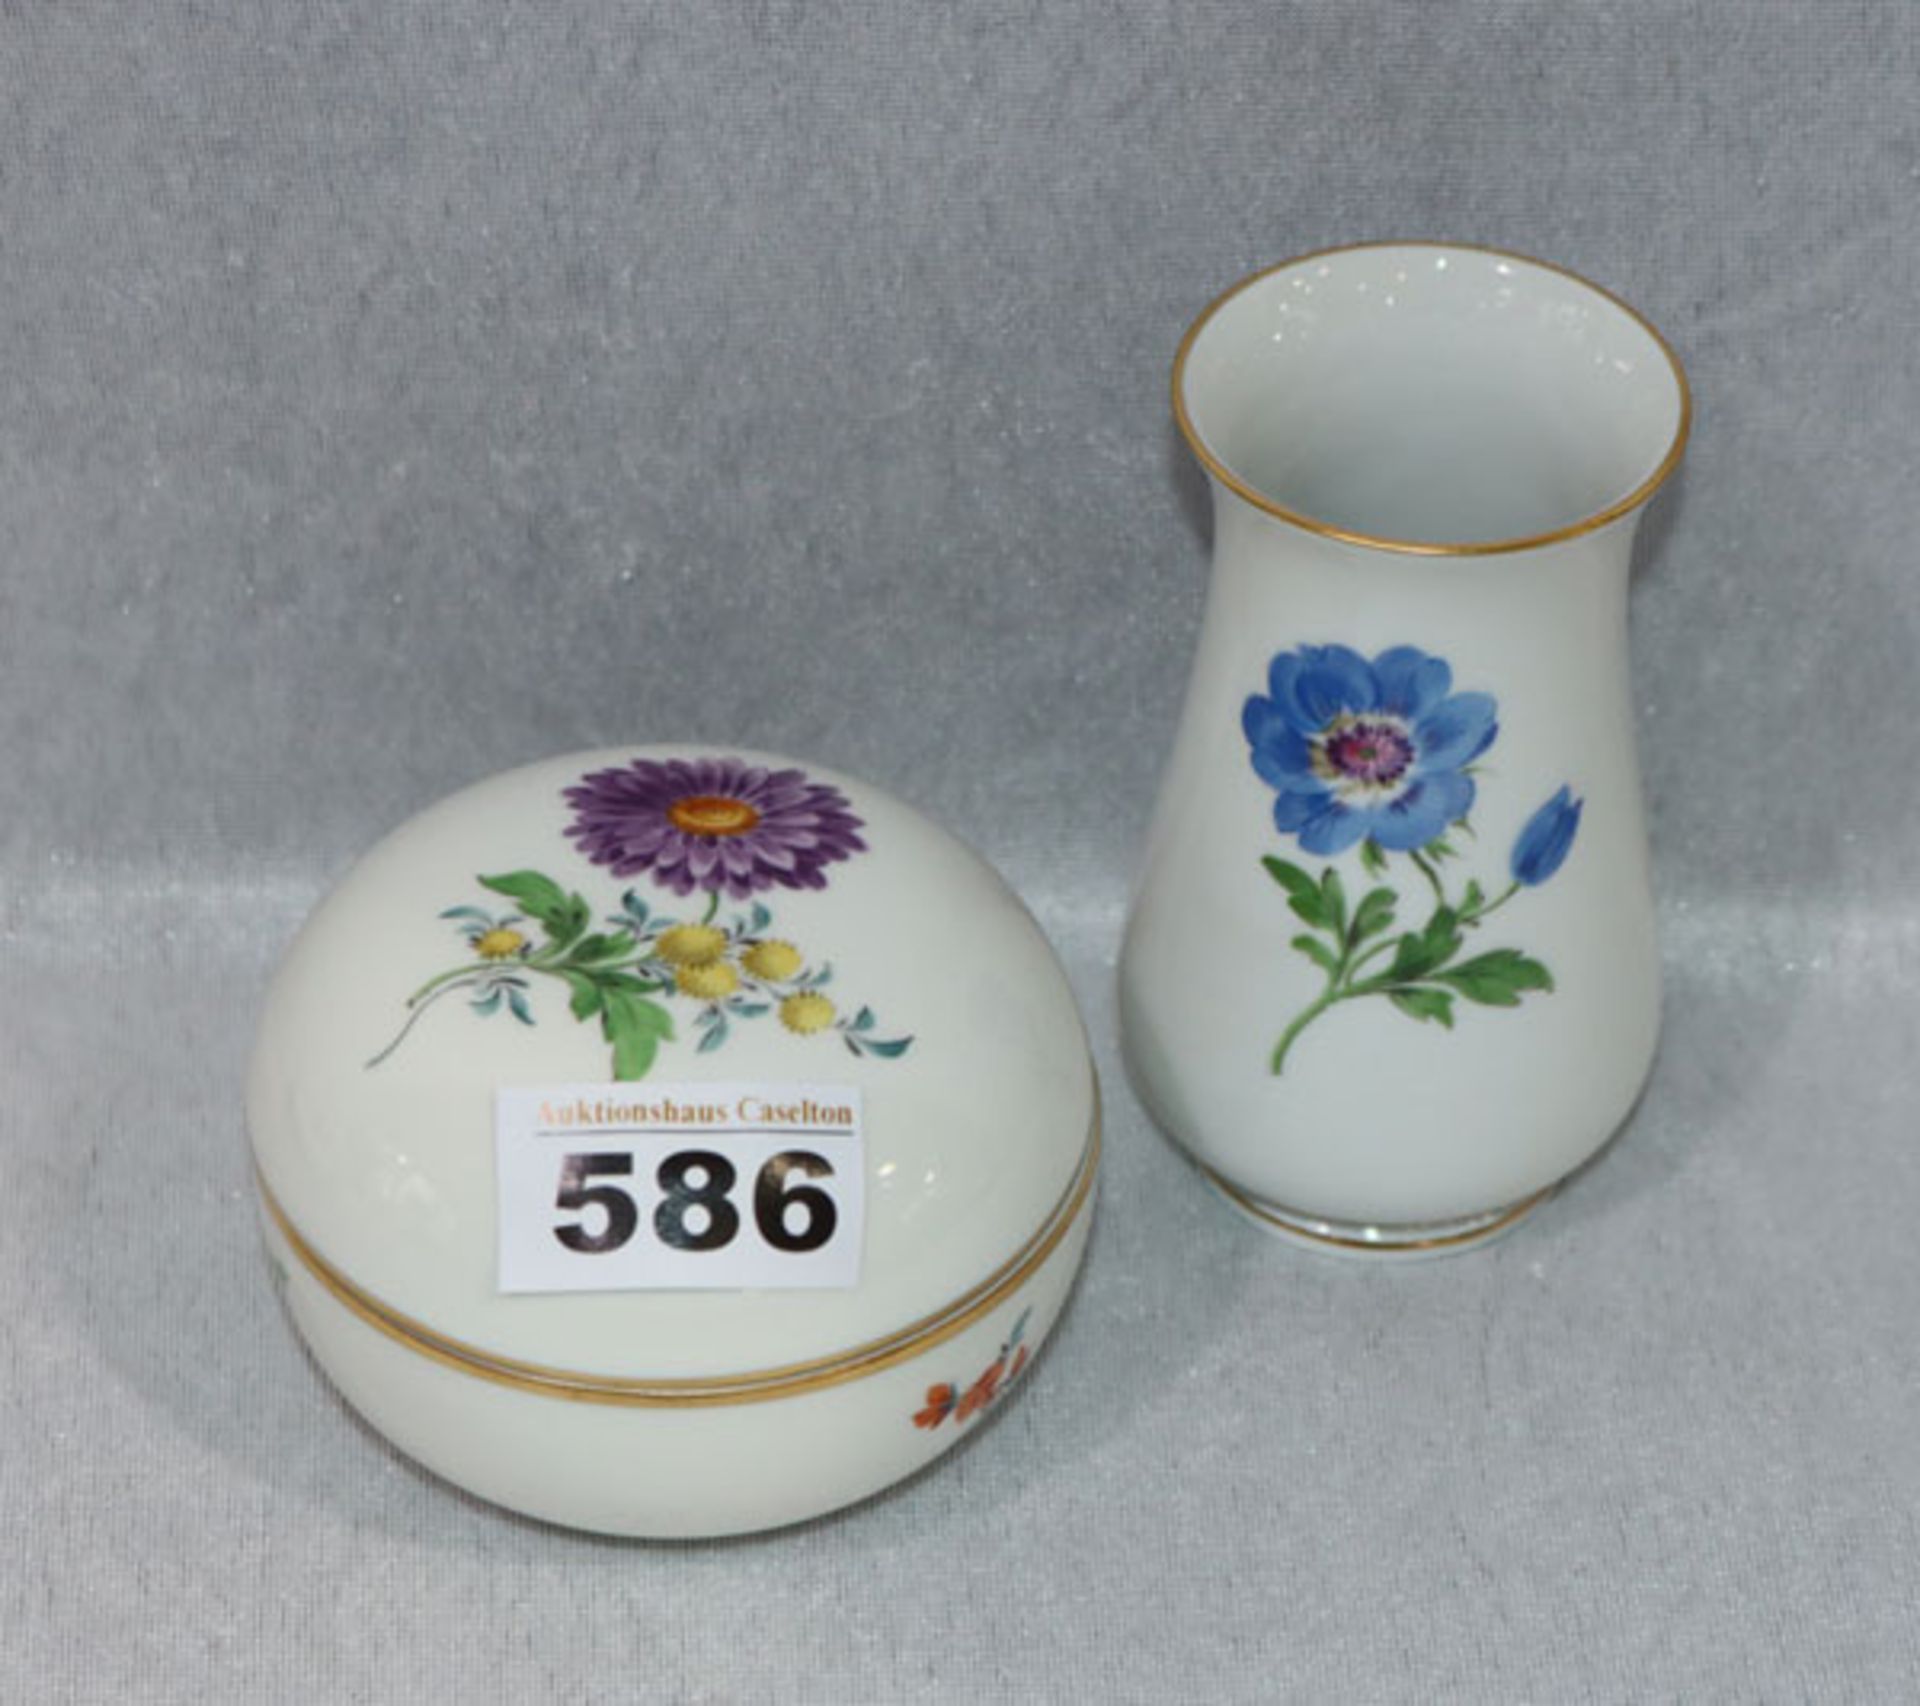 Runde Meissen Deckeldose, H 7 cm, D 9 cm, und Vase, H 10,5 cm D 5,5 cm, beides mit Blumenmalerei und